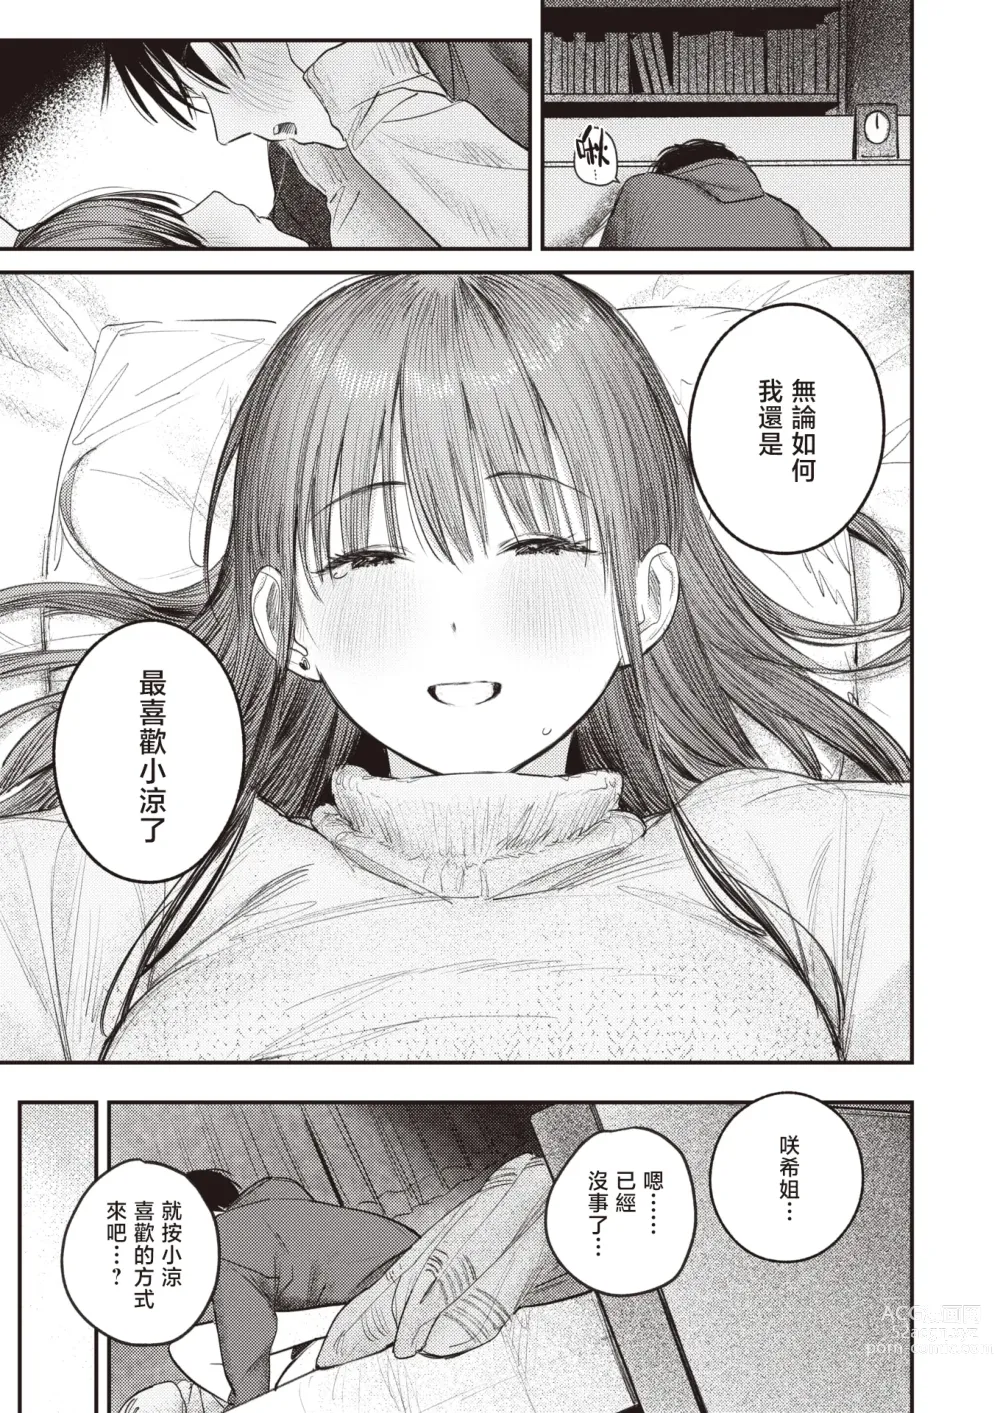 Page 20 of manga 直到雾释冰融